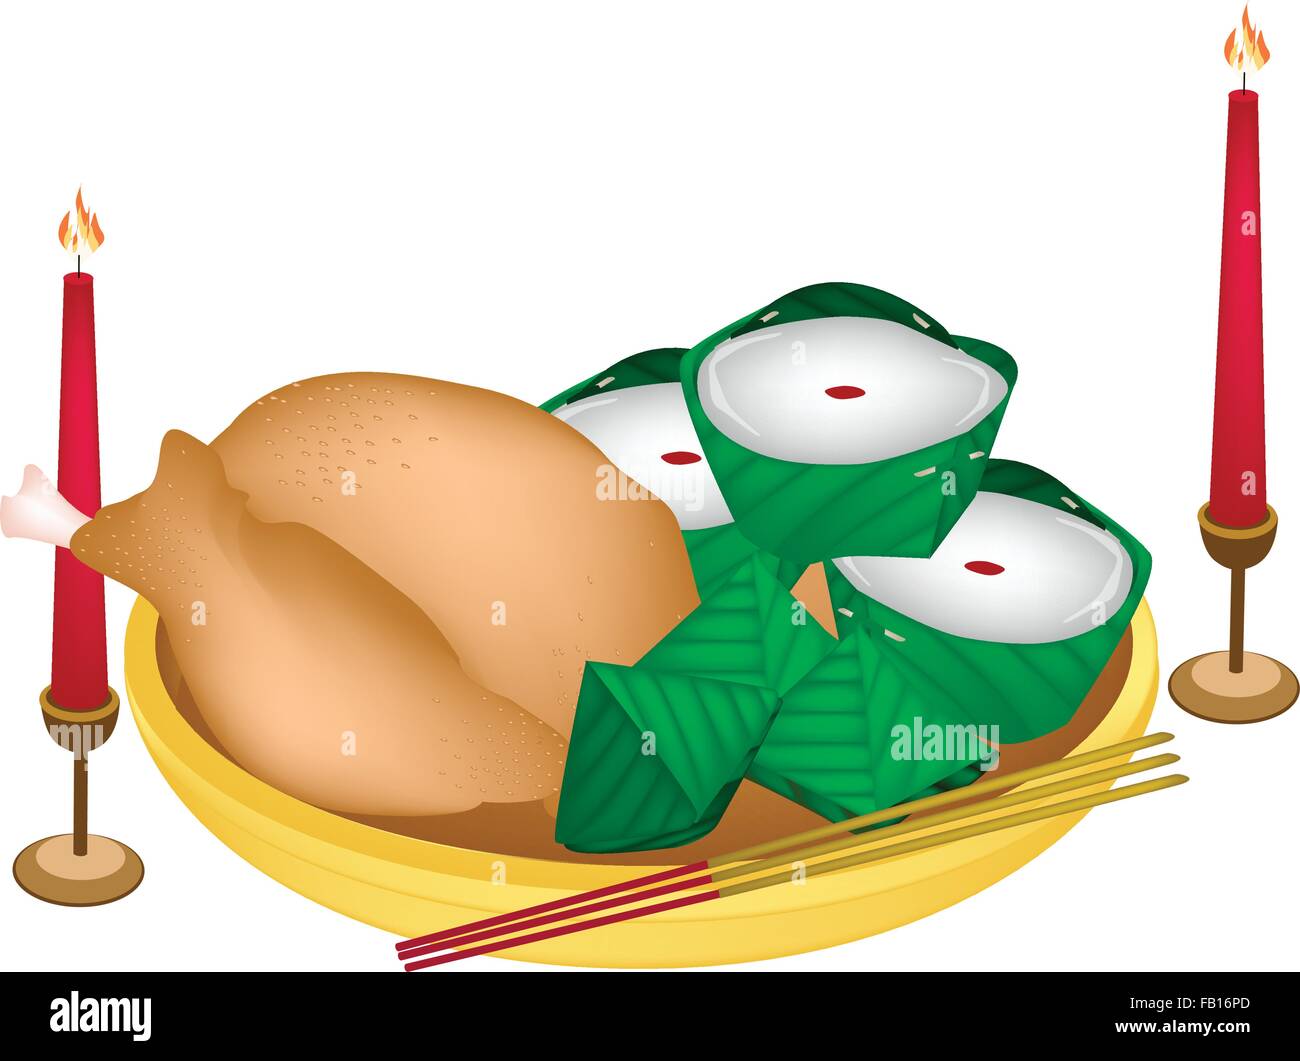 Gefüllte Teig-Pyramide-Dessert und chinesischen Pudding oder chinesische Leckerei mit gekochtes Huhn oder gekochte Ente für Pay gegenüber Gott Stock Vektor